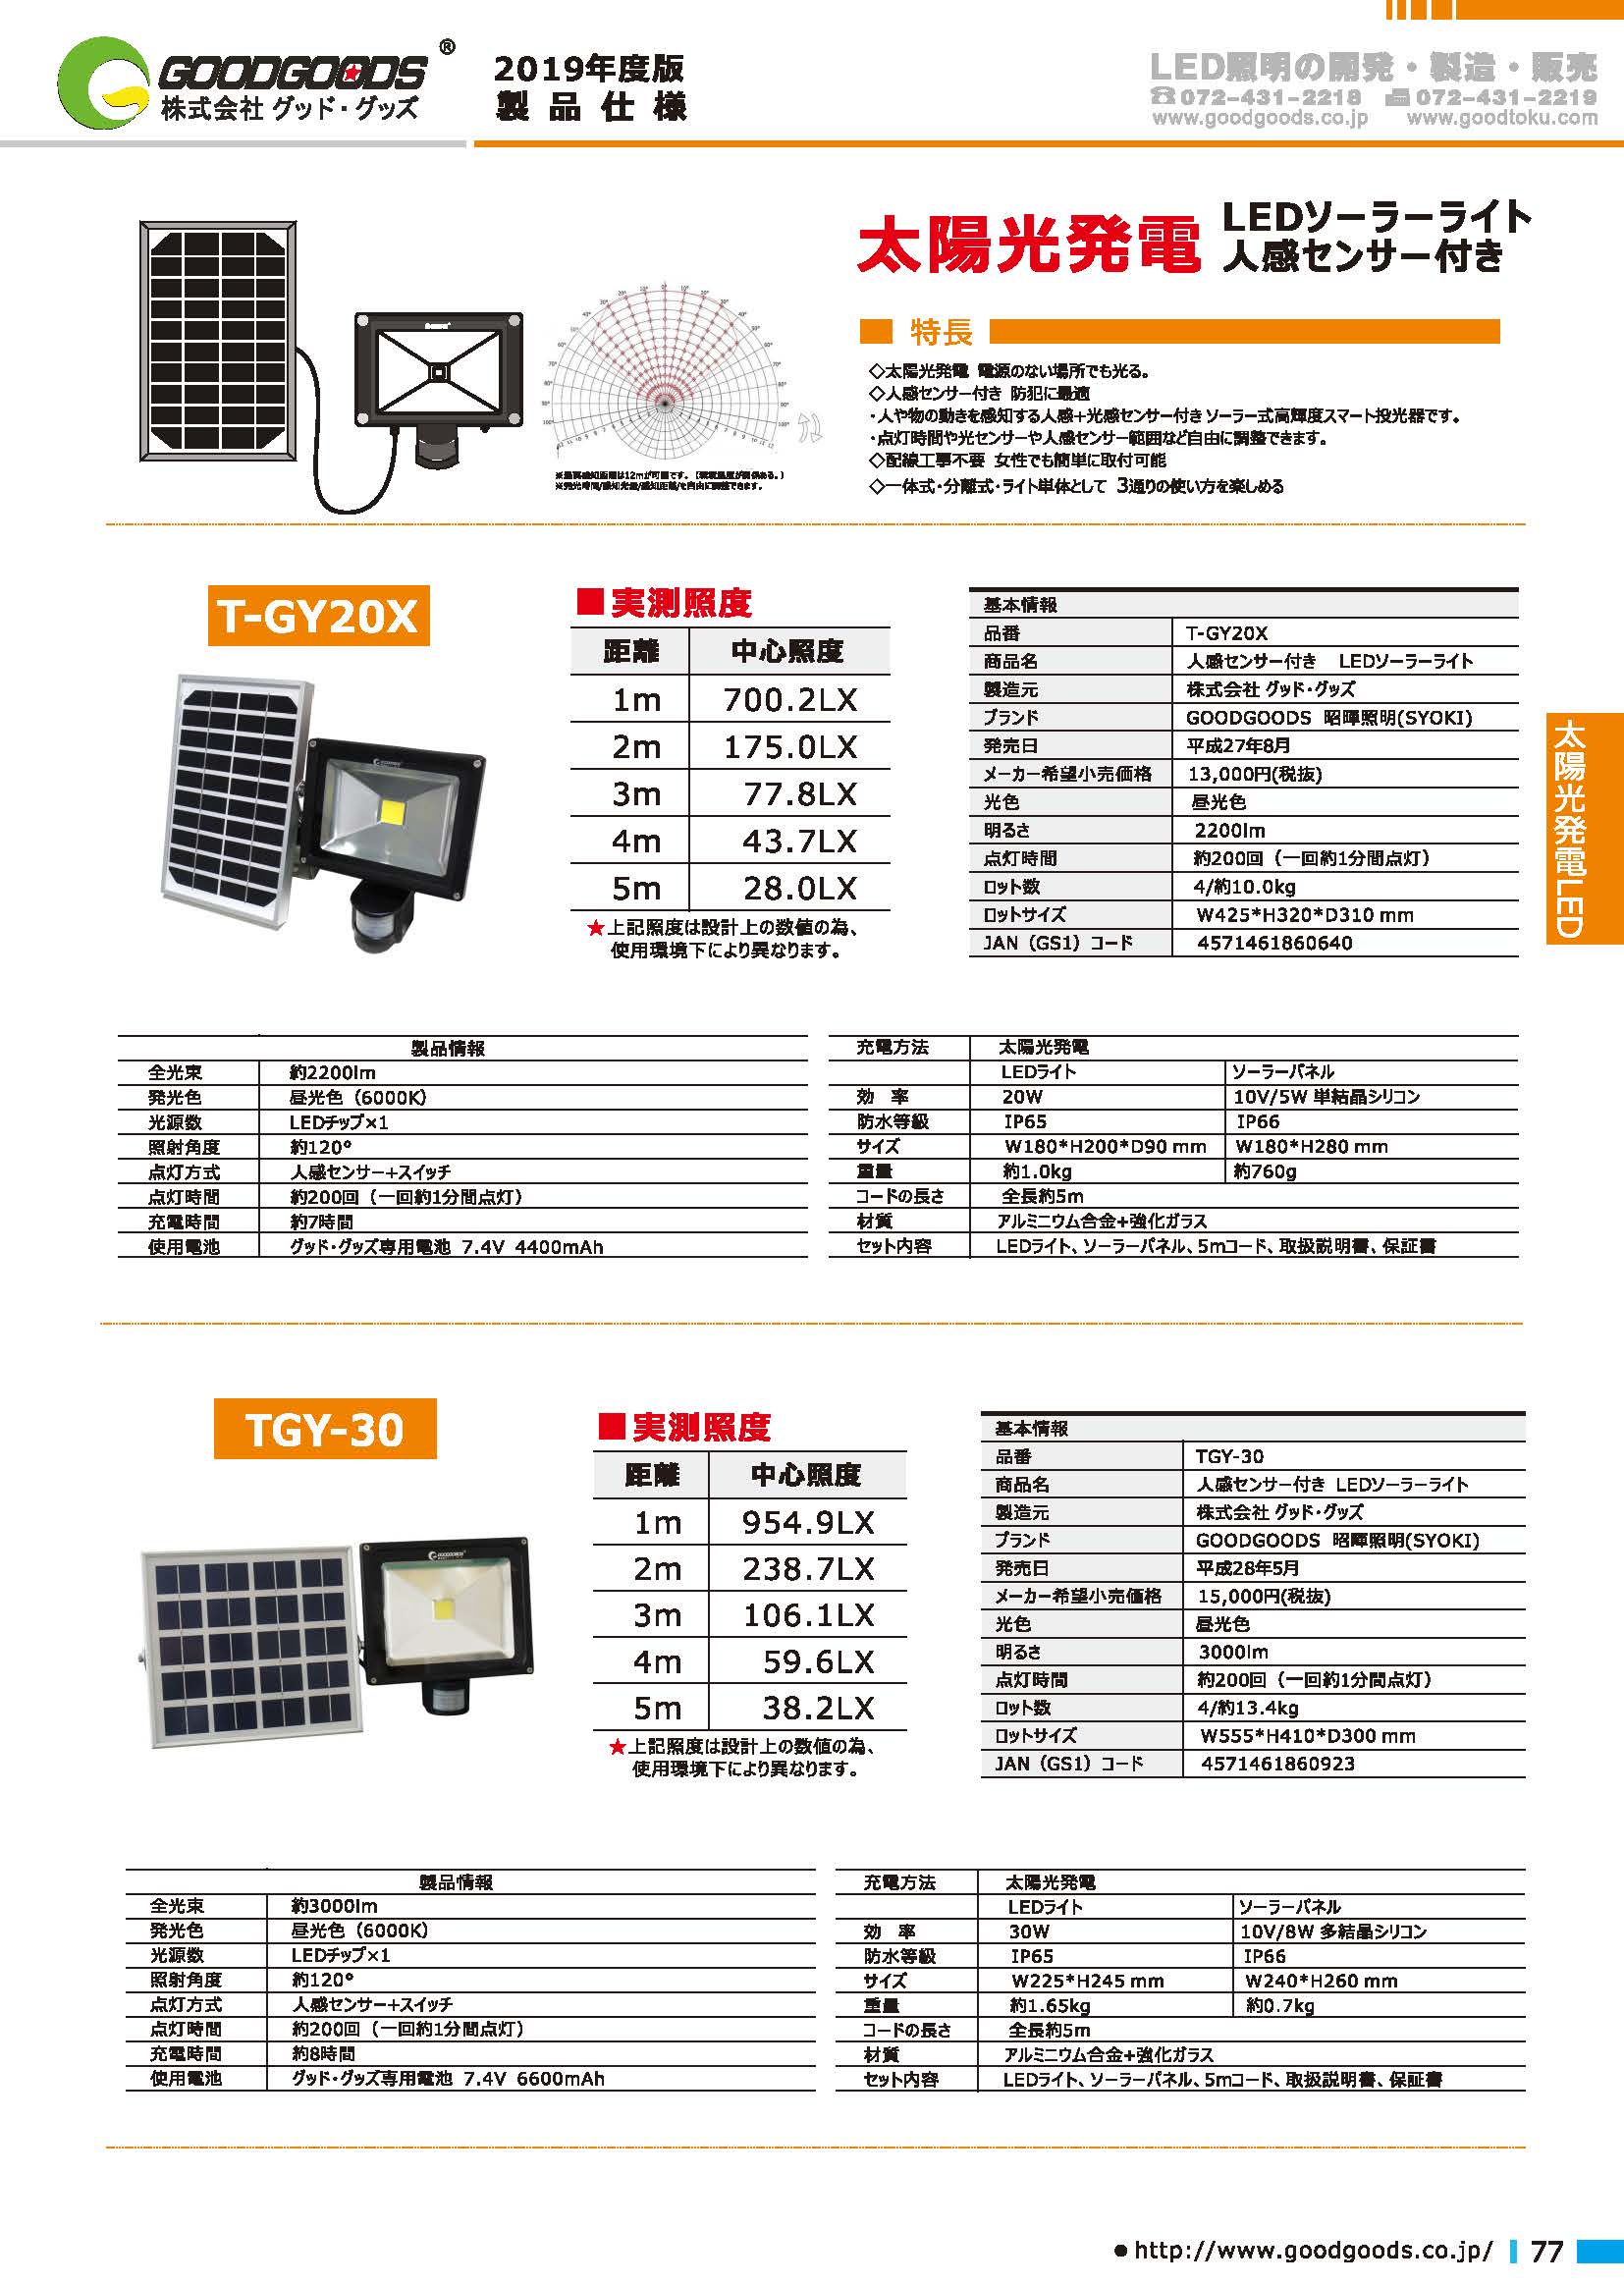 製品情報 LED人感センサーライト T-GY20X | LED照明製造・販売・開発 